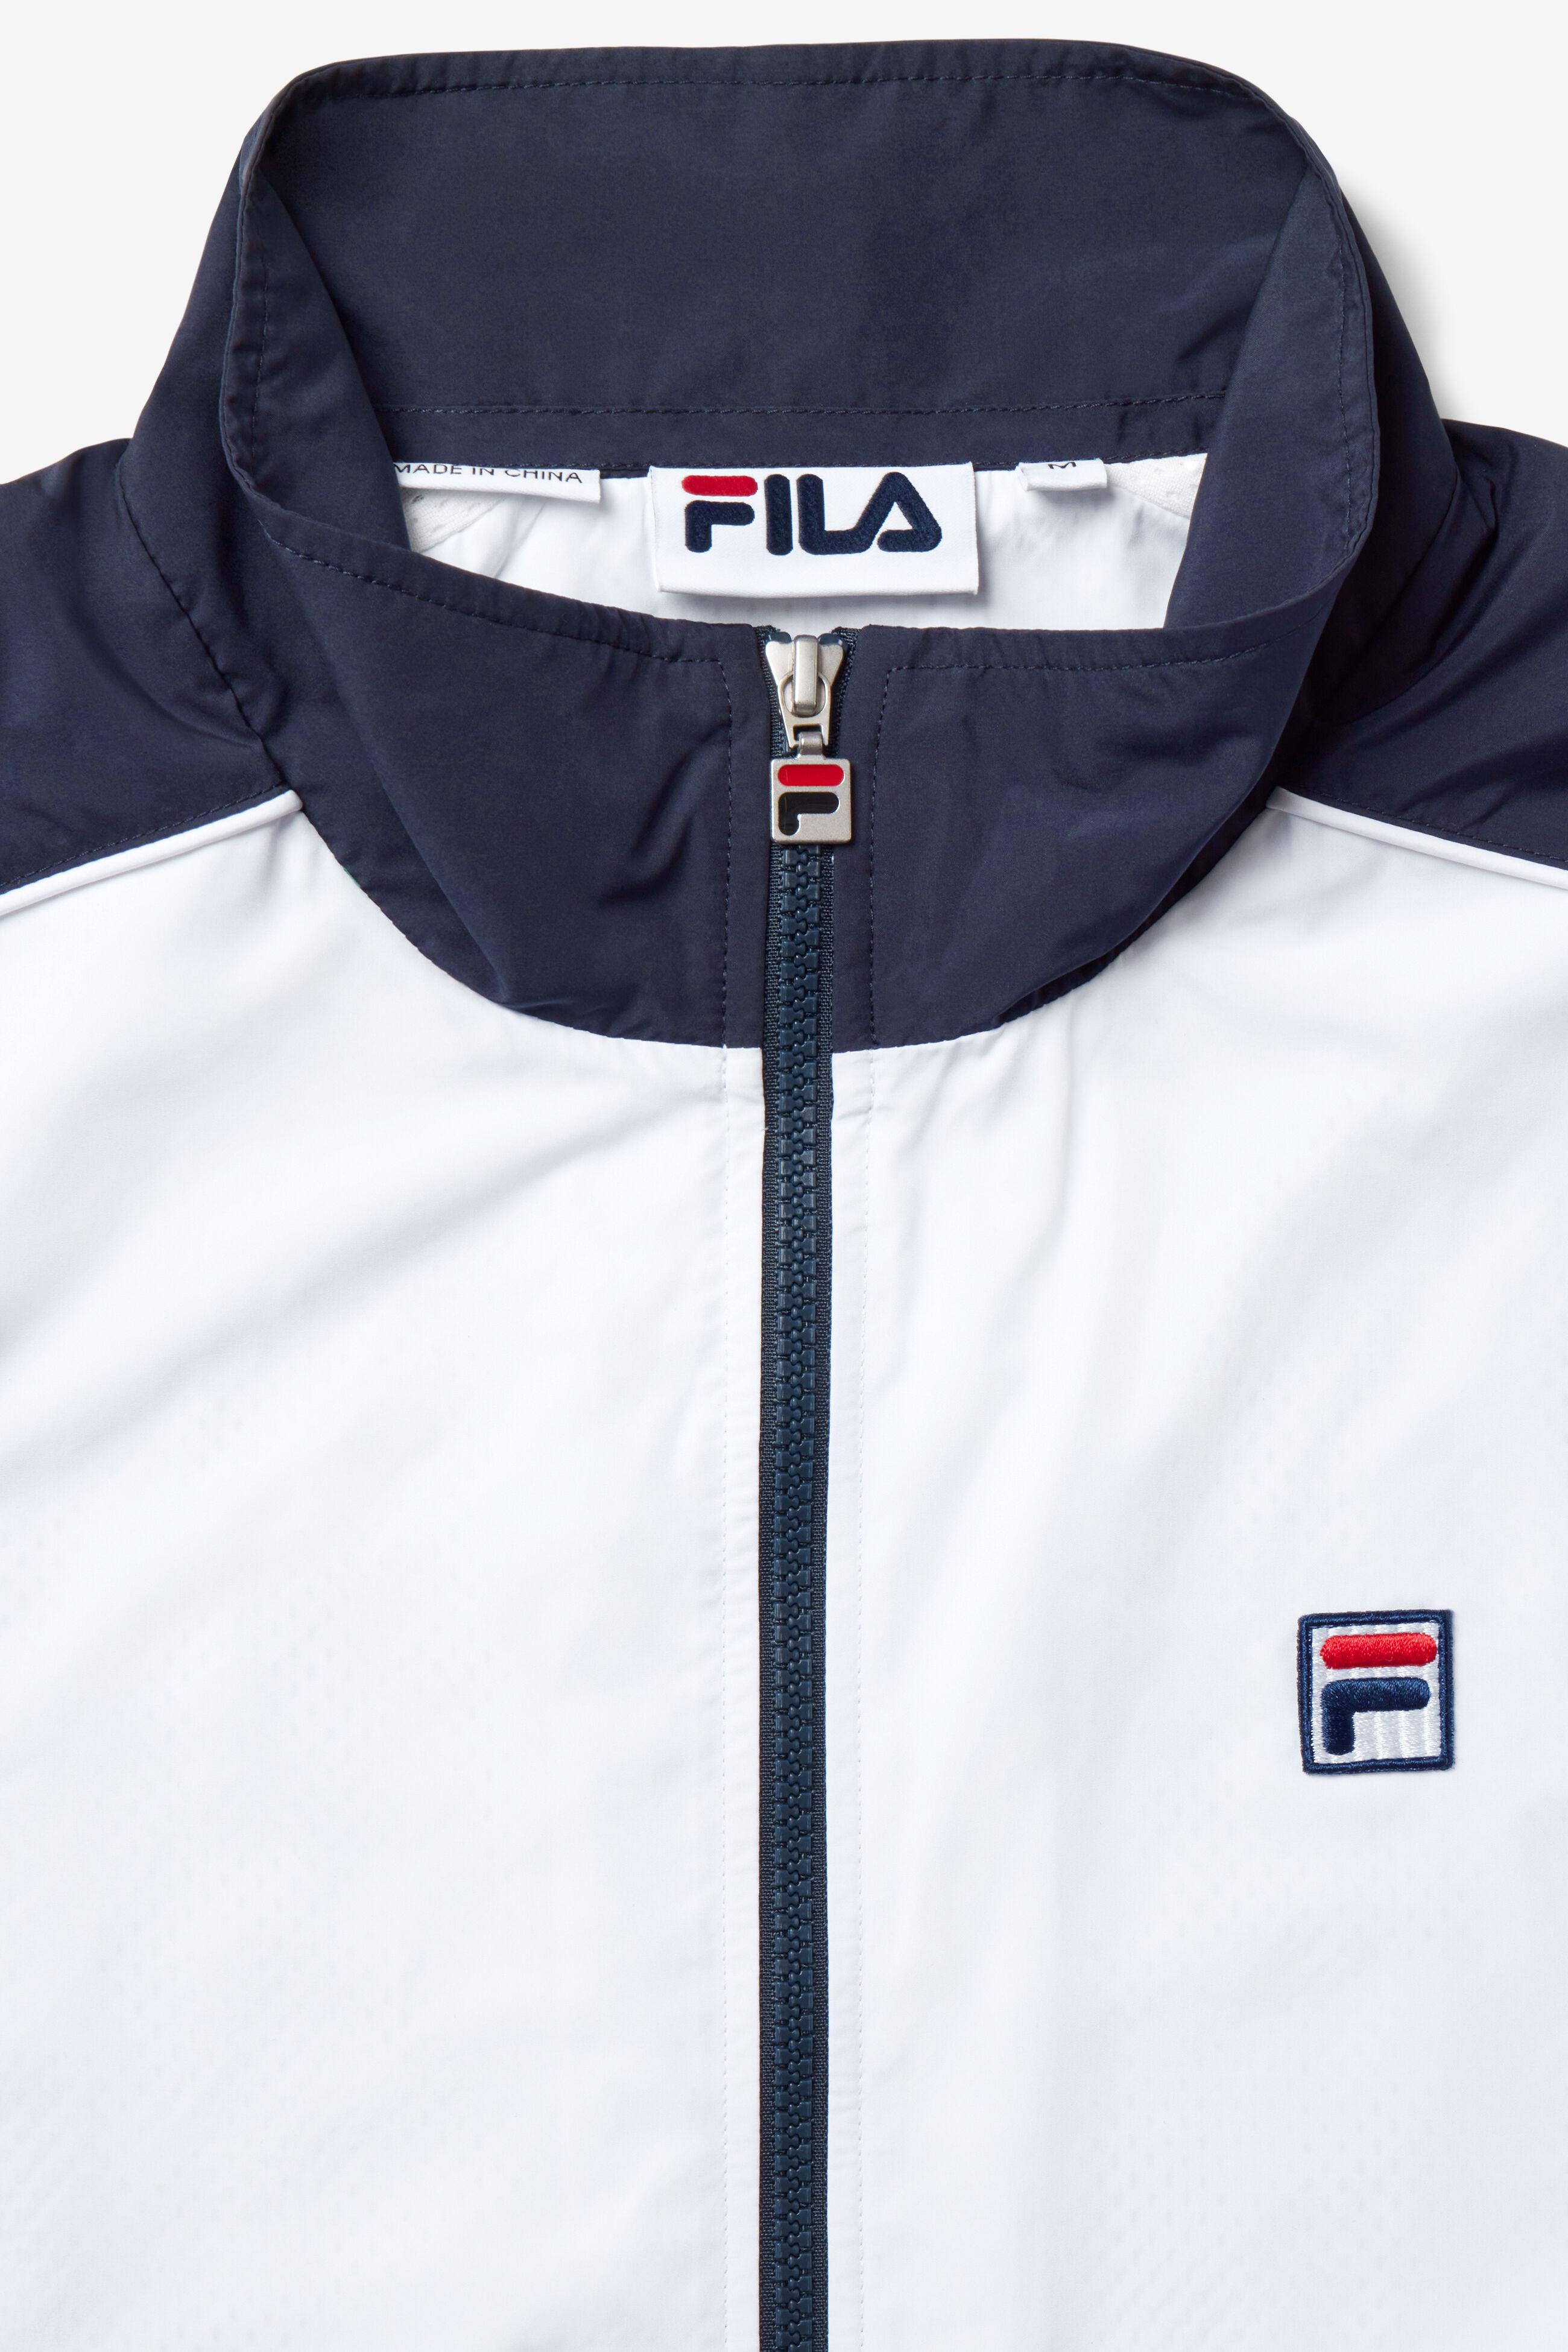 Fila F-box Anniversary Track Jacket in Blue |